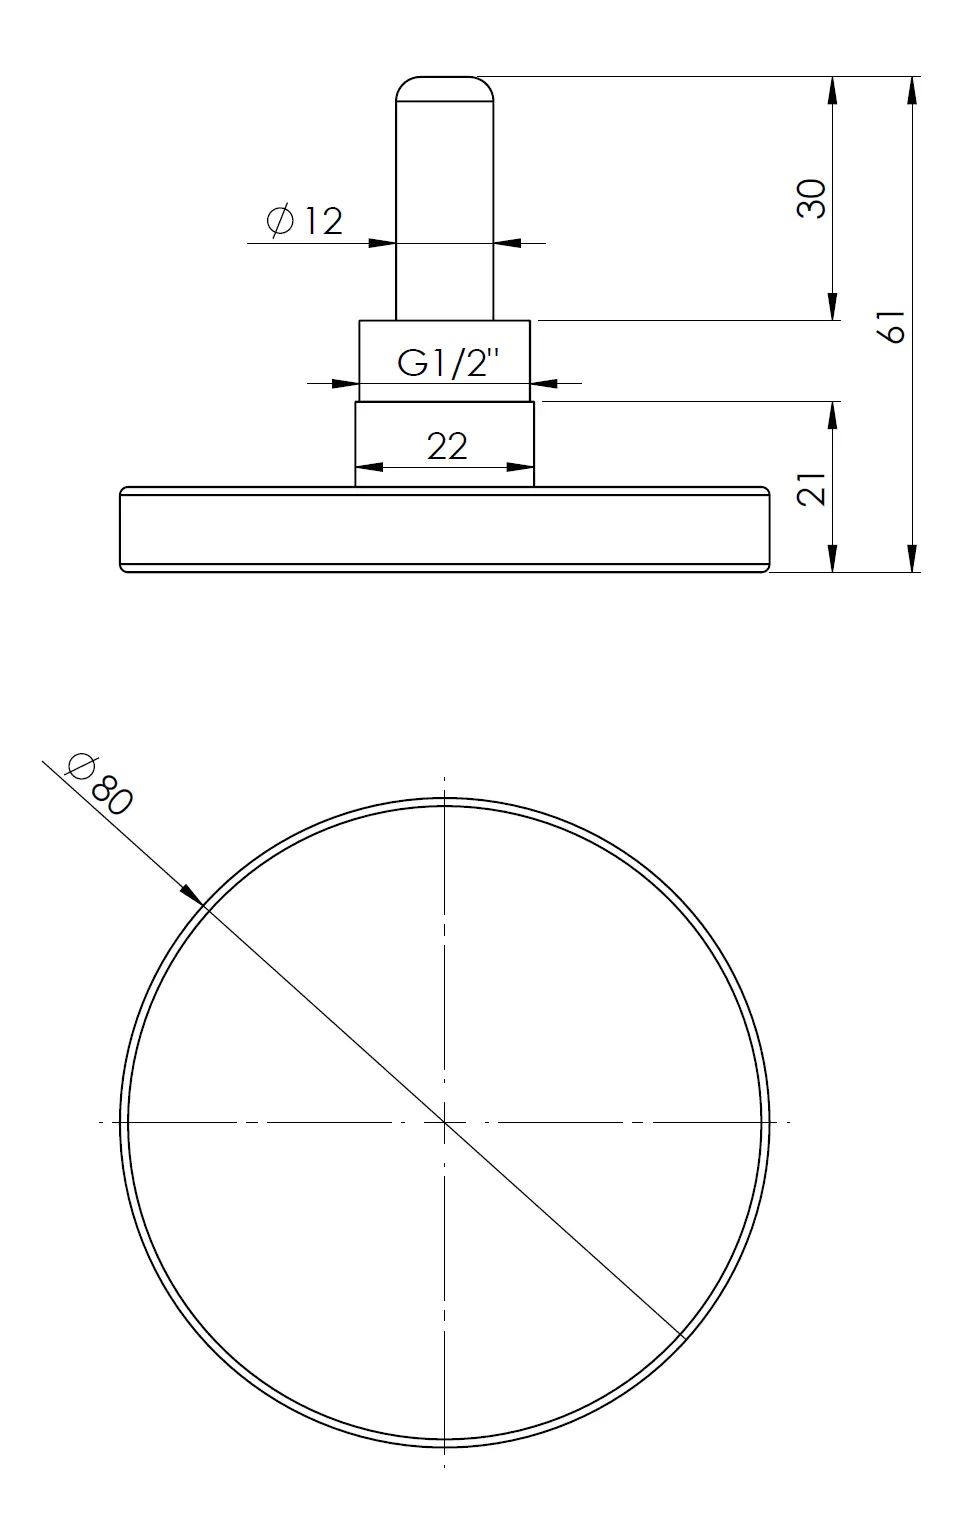 Termometr bimetaliczny BiTh 80, fi80 mm, 0÷160°C, L 40 mm, G1/2',' ax, kl. 2 - budowa